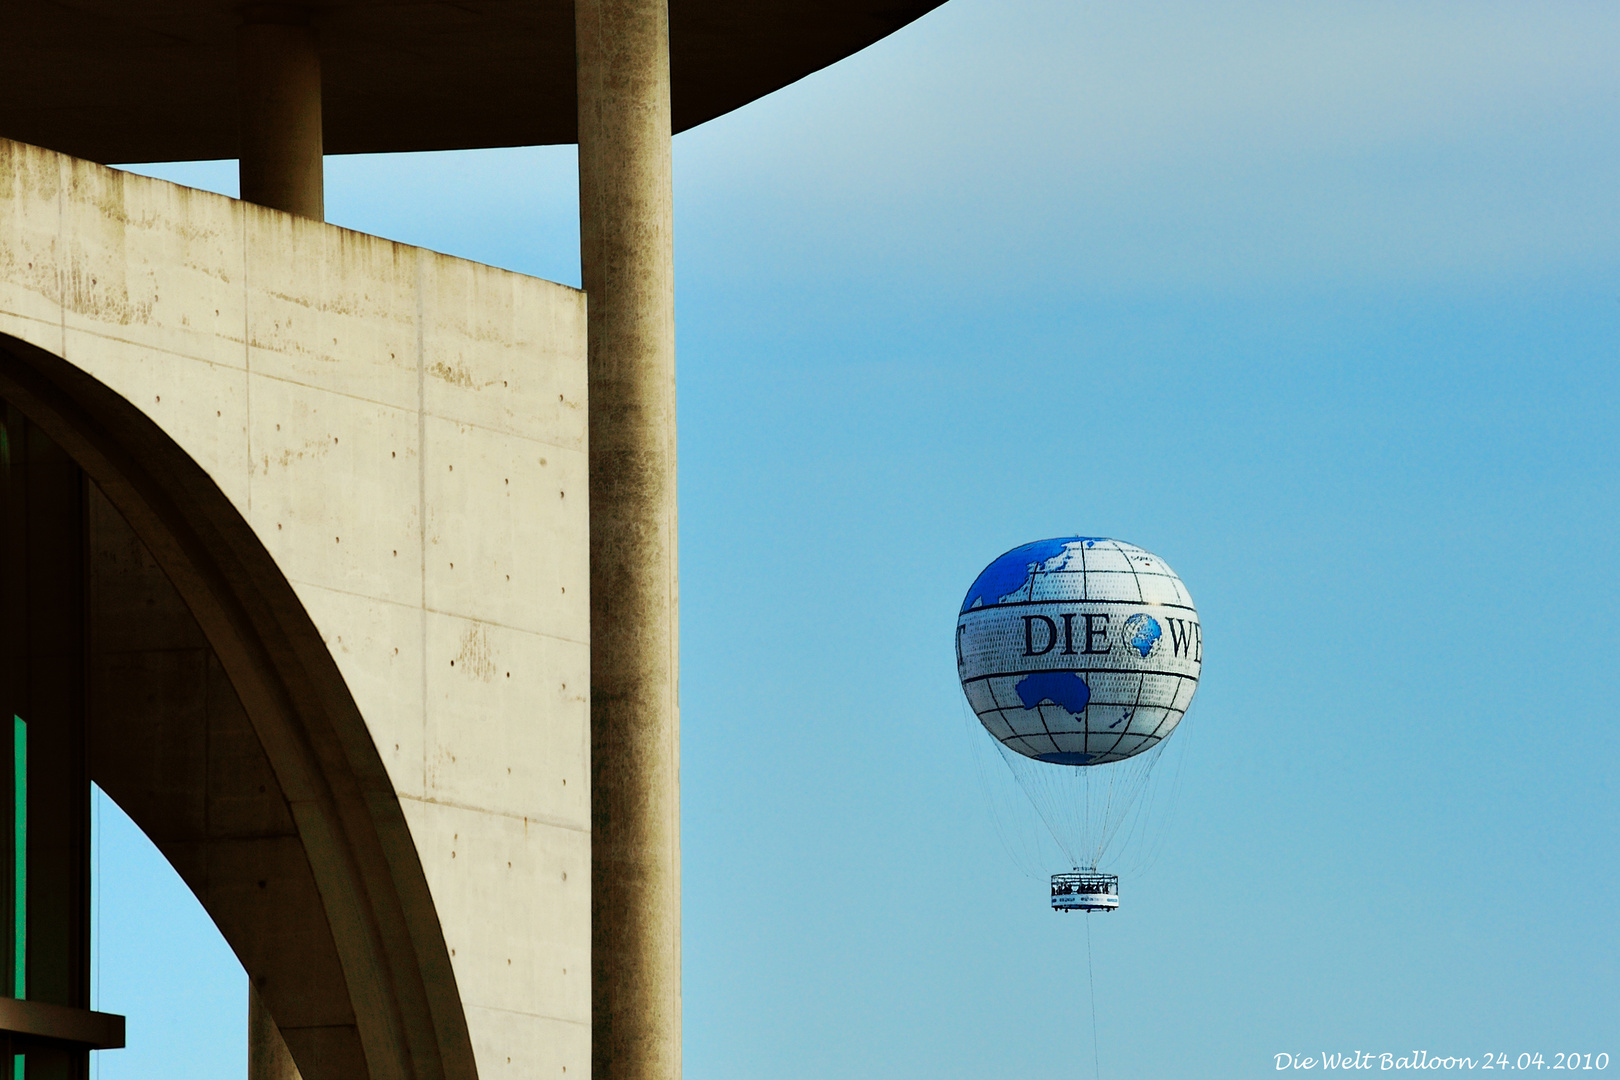 Die Welt Balloon (24.04.2010)